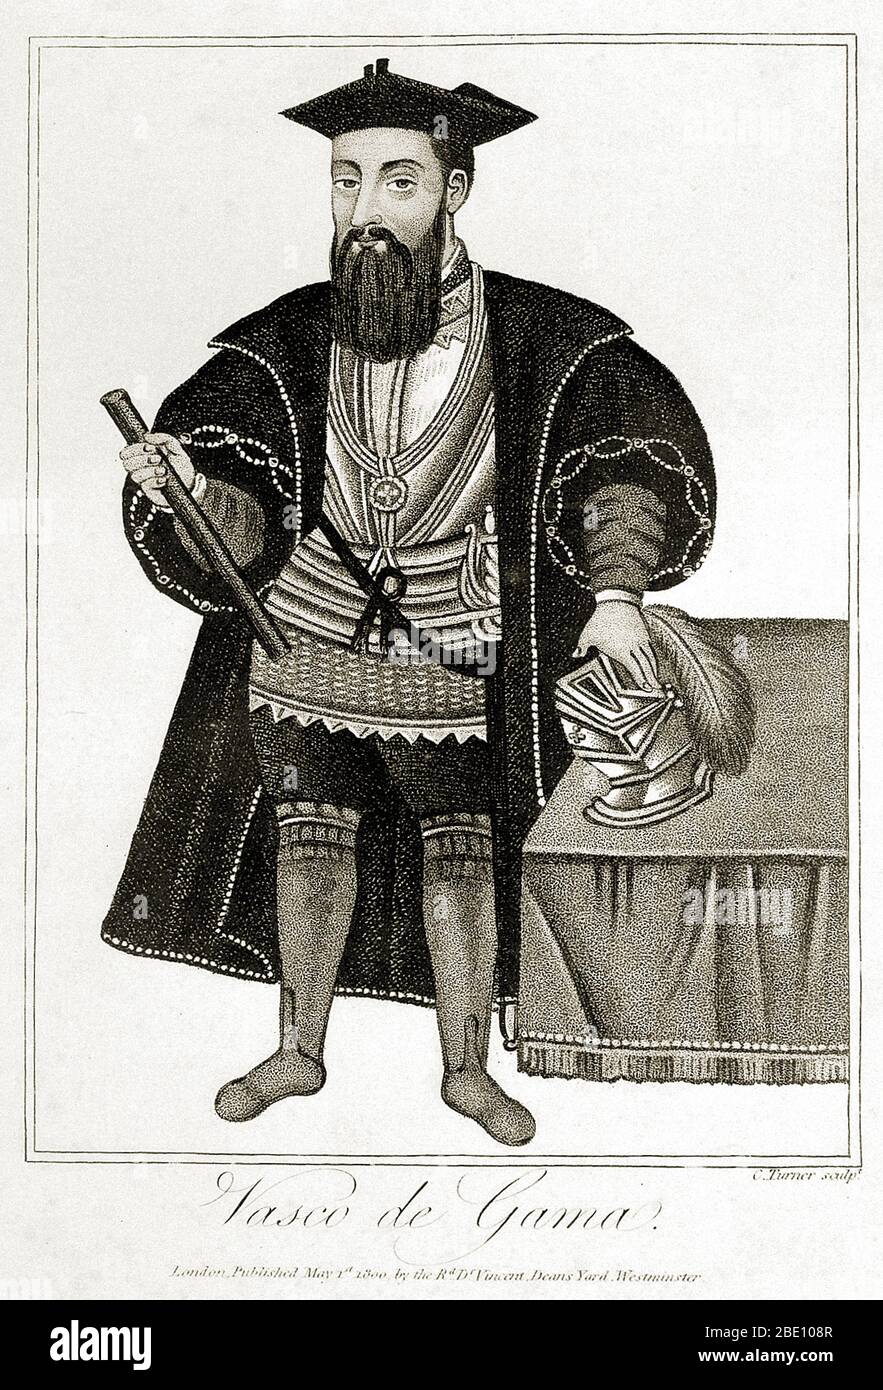 Vasco da Gama (1460 – 24 dicembre 1524) è stato un esploratore portoghese ed il primo europeo a raggiungere l'India via mare. Il suo viaggio iniziale in India (1497-99) fu il primo a collegare l'Europa e l'Asia tramite una rotta oceanica, collegando l'Atlantico e gli oceani indiani e quindi l'Occidente e l'Oriente. La scoperta di da Gama della via marittima verso l'India fu significativa e aprì la strada ad un'epoca di imperialismo globale e ai portoghesi per stabilire un impero coloniale di lunga durata in Asia. Il suo primo viaggio in India è considerato una pietra miliare nella storia mondiale. Foto Stock